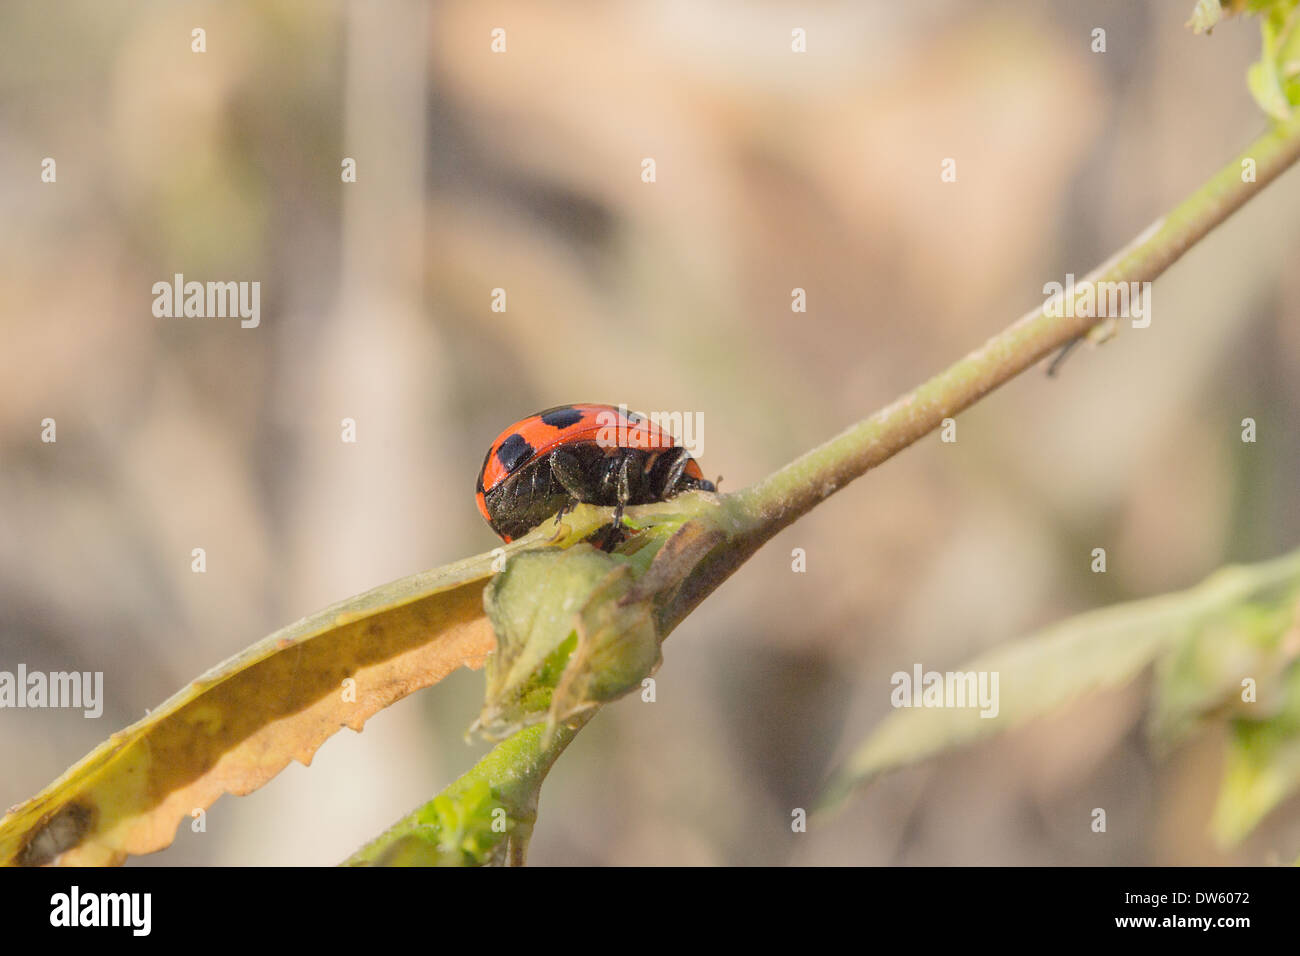 Diese Marienkäfer spielt verstecken und suchen mit mir, wenn ich diese Fotos dabei war. Stockfoto